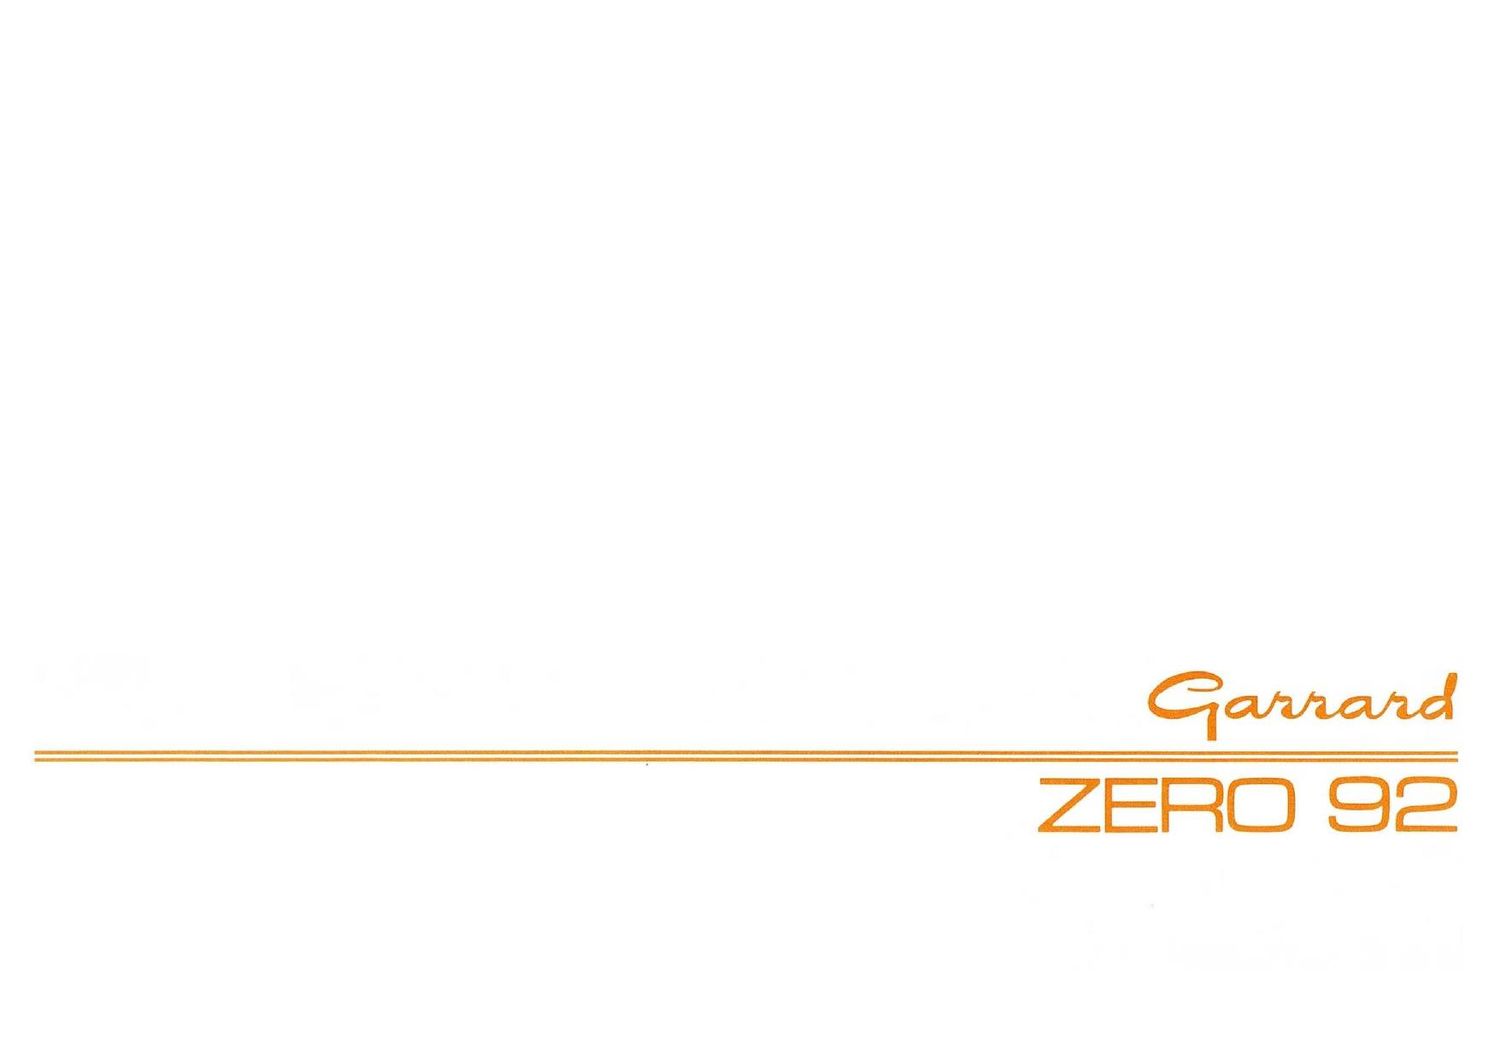 Garrard Zero 92 Owners Manual